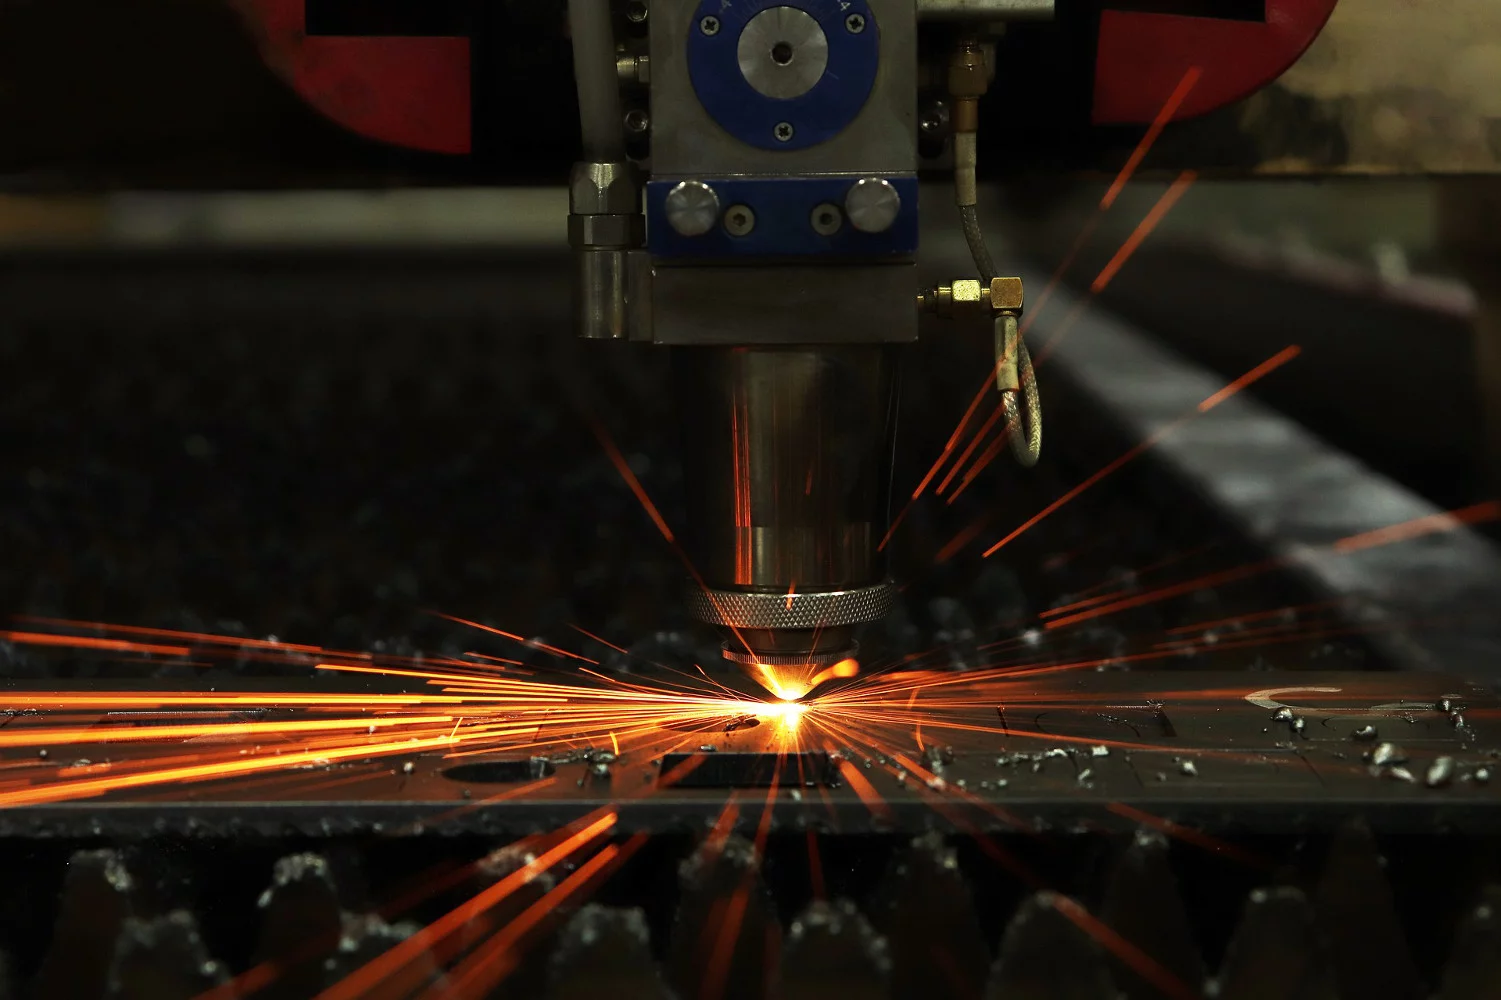 Cięcie laserowe jako innowacyjna metoda cięcia metalu, która zdobyła uznanie ekspertów!